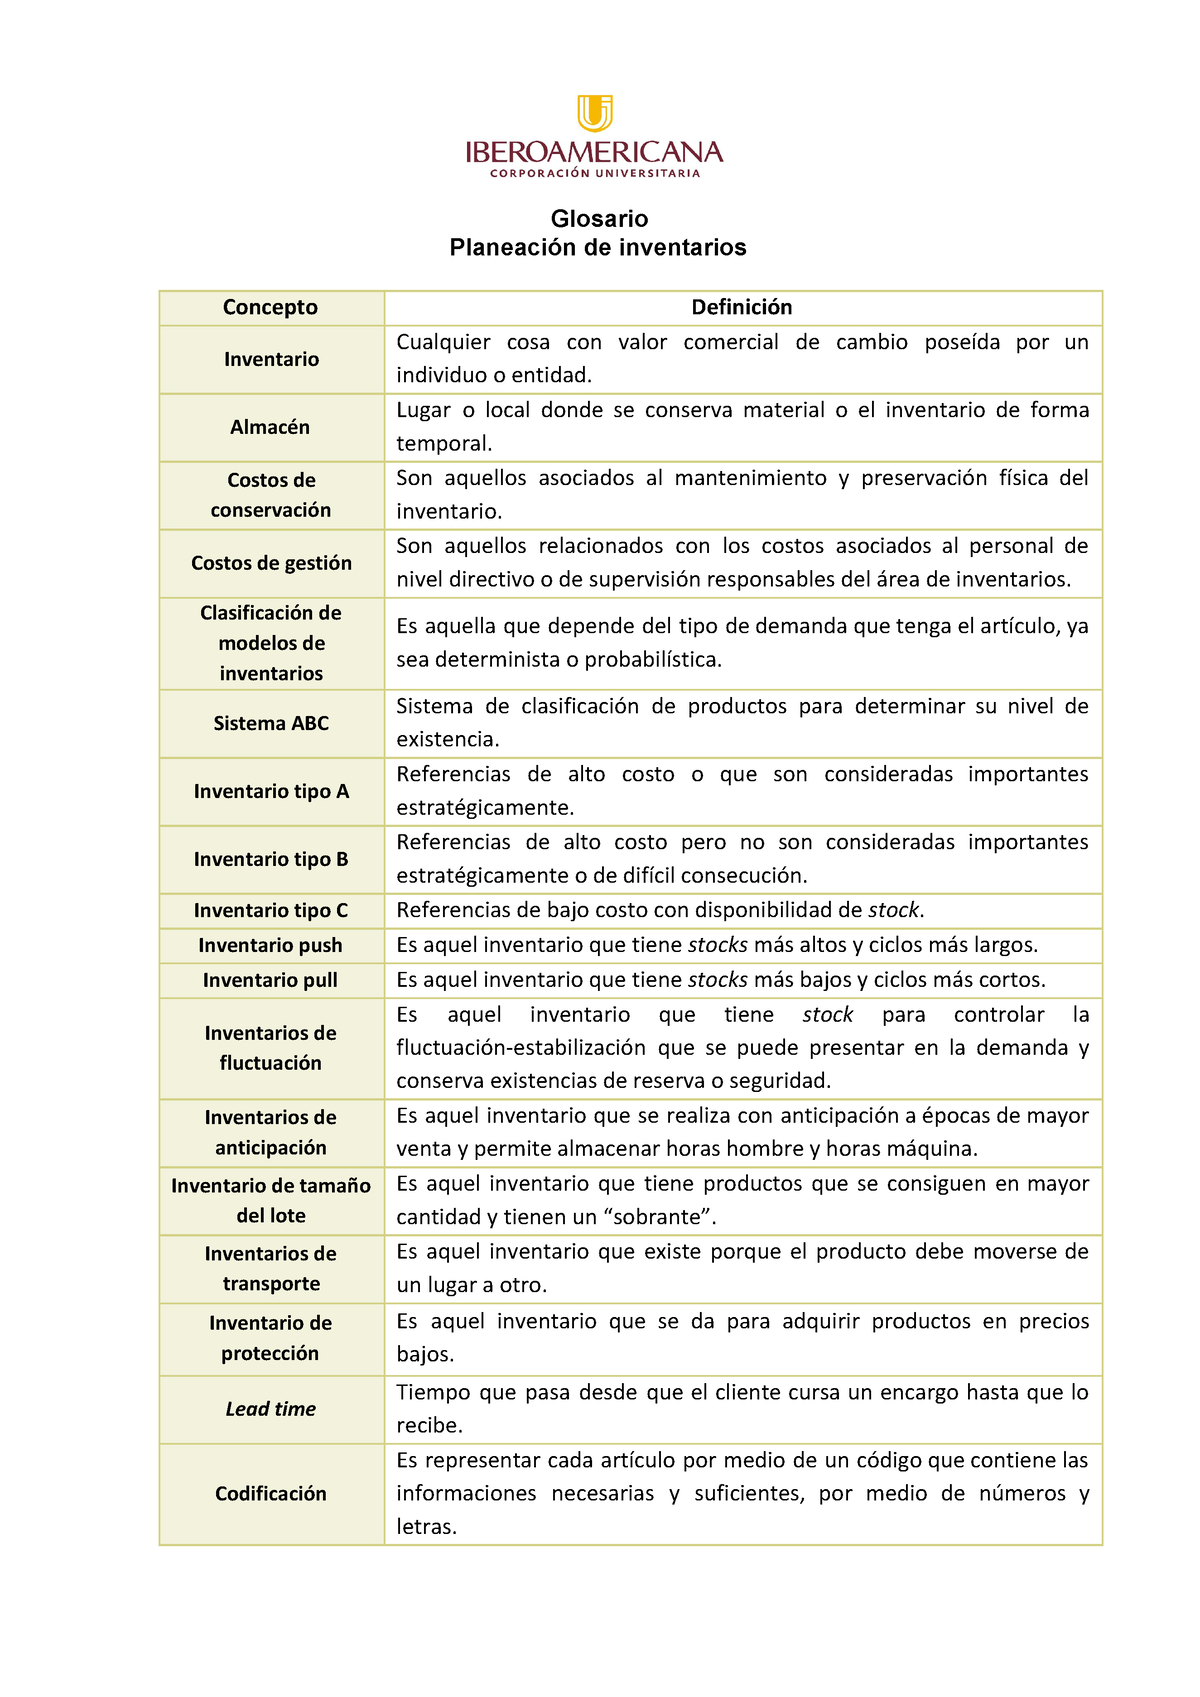 Glosario De Planeacion De Inventarios Glosario Planeación De Inventarios Concepto Definición 7683